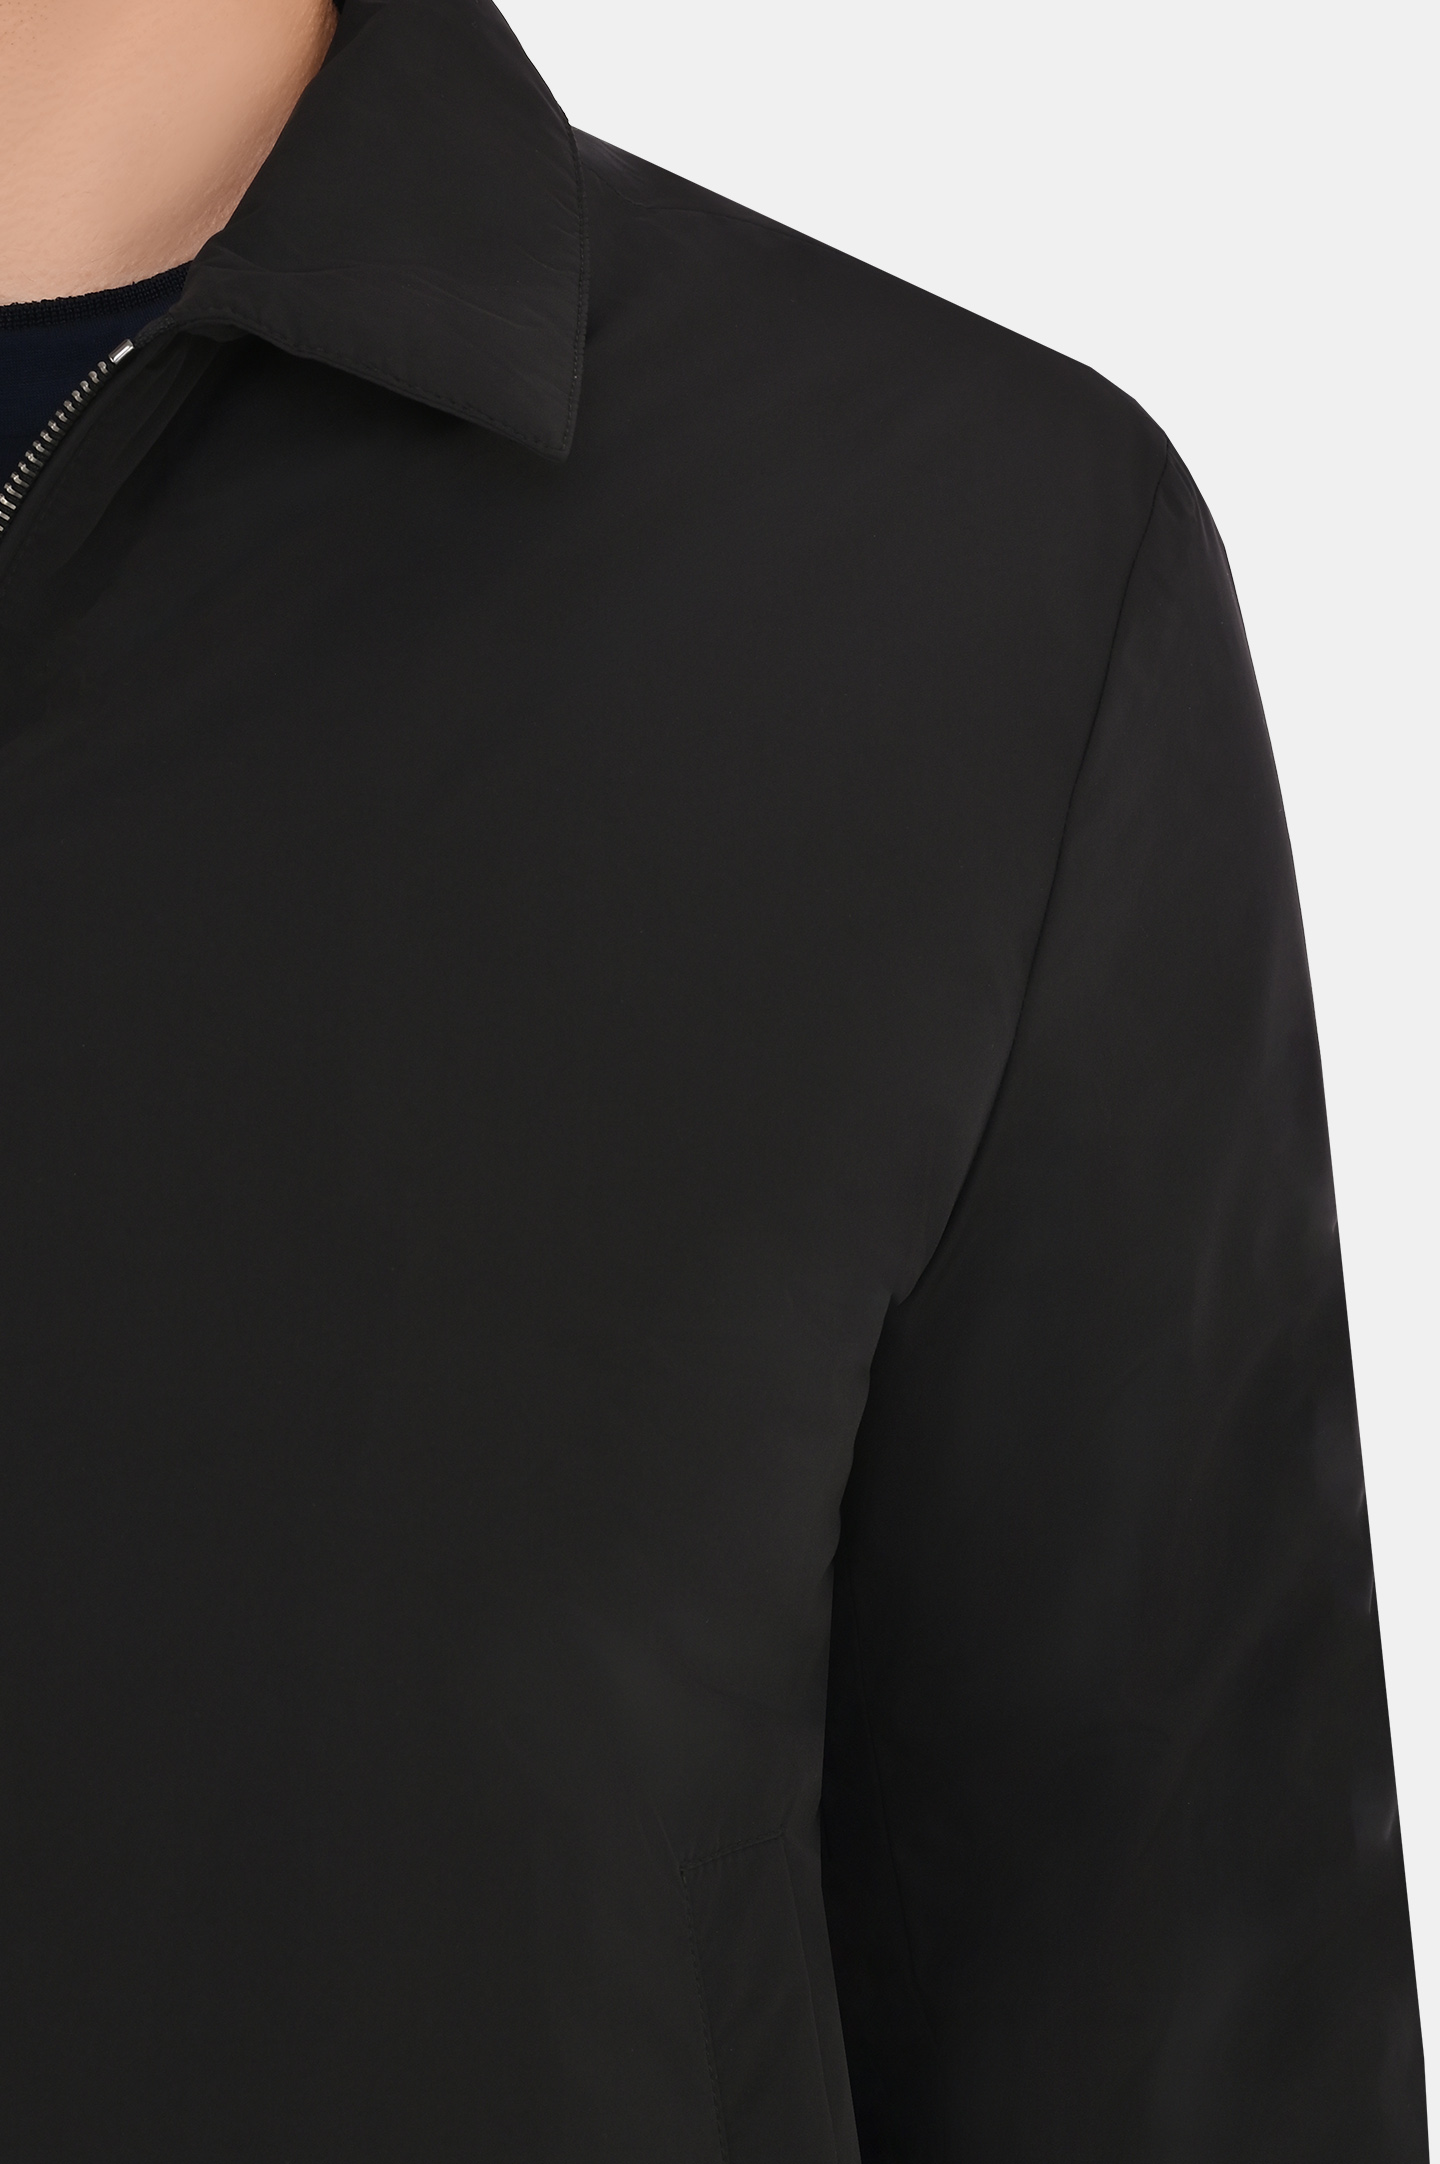 Куртка CANALI SG02321 O40859, цвет: Черный, Мужской